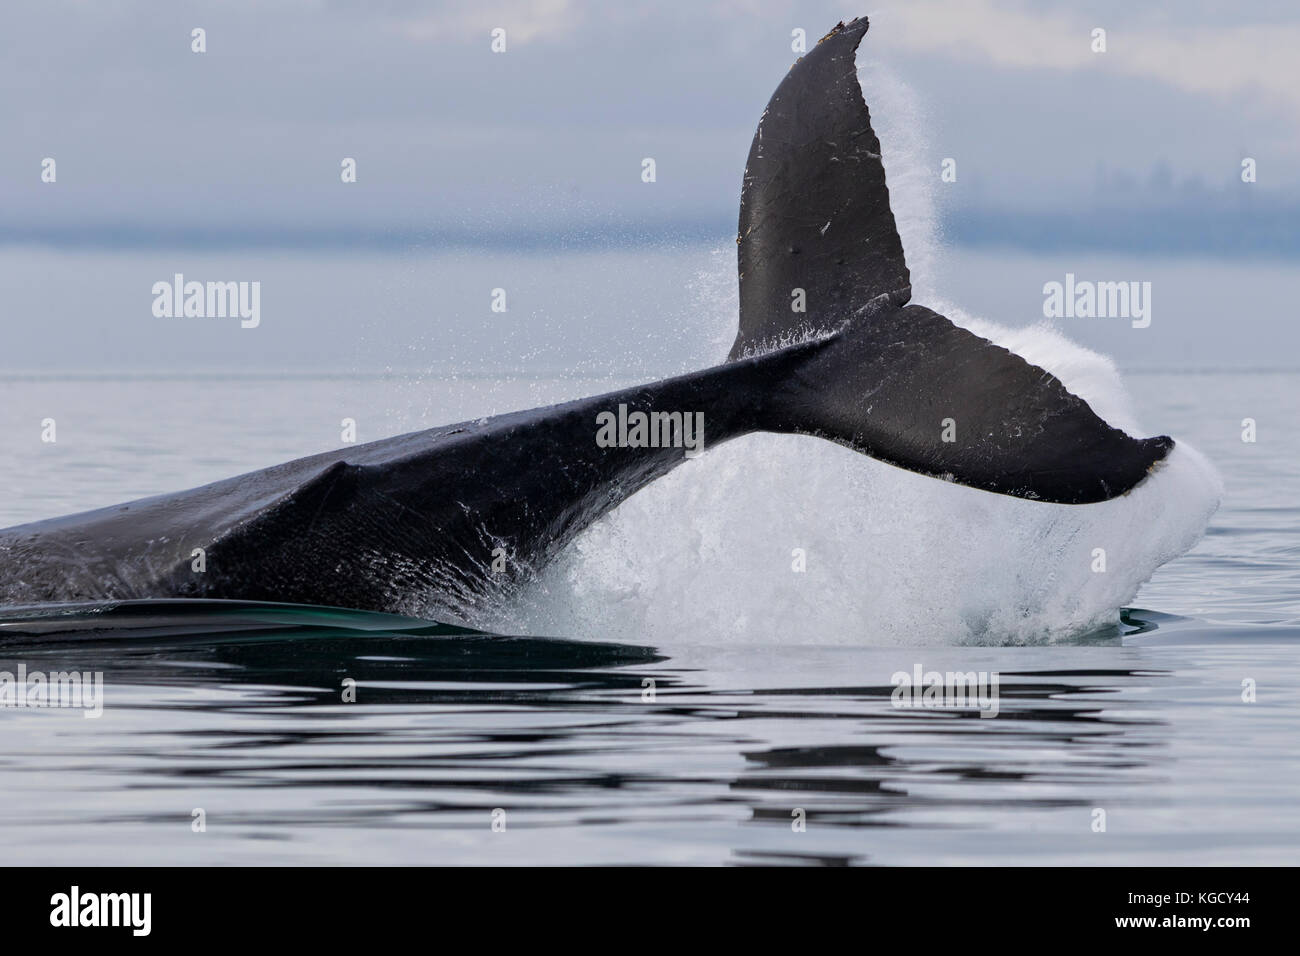 Baleine à bosse avec ses éclaboussures fluke, un puissant écran, au large de l'île de Vancouver, Colombie-Britannique, Canada. Banque D'Images